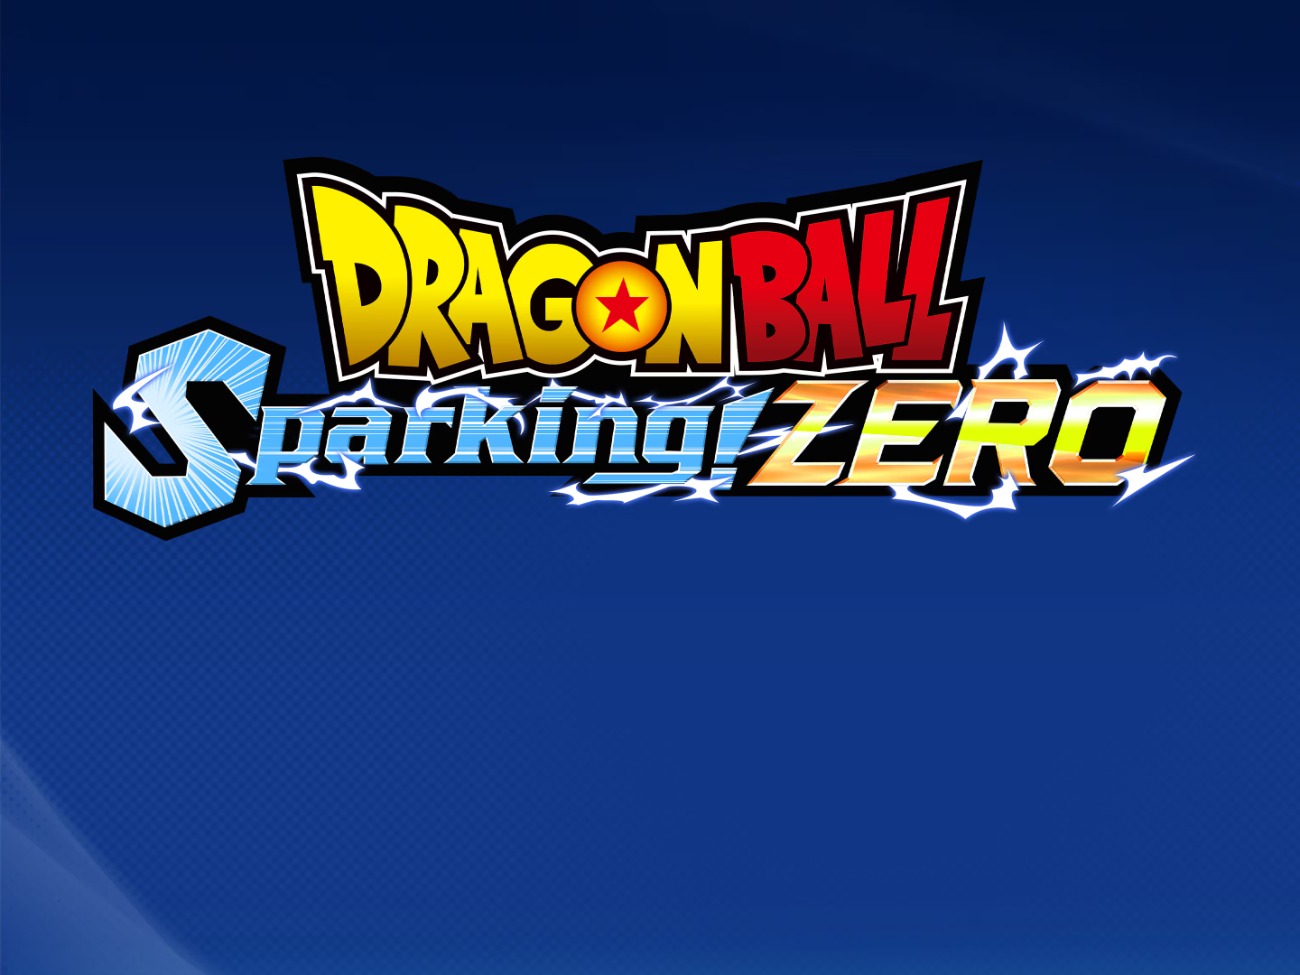 Dragon Ball: Sparking! ZERO - Les modes de jeu en détail